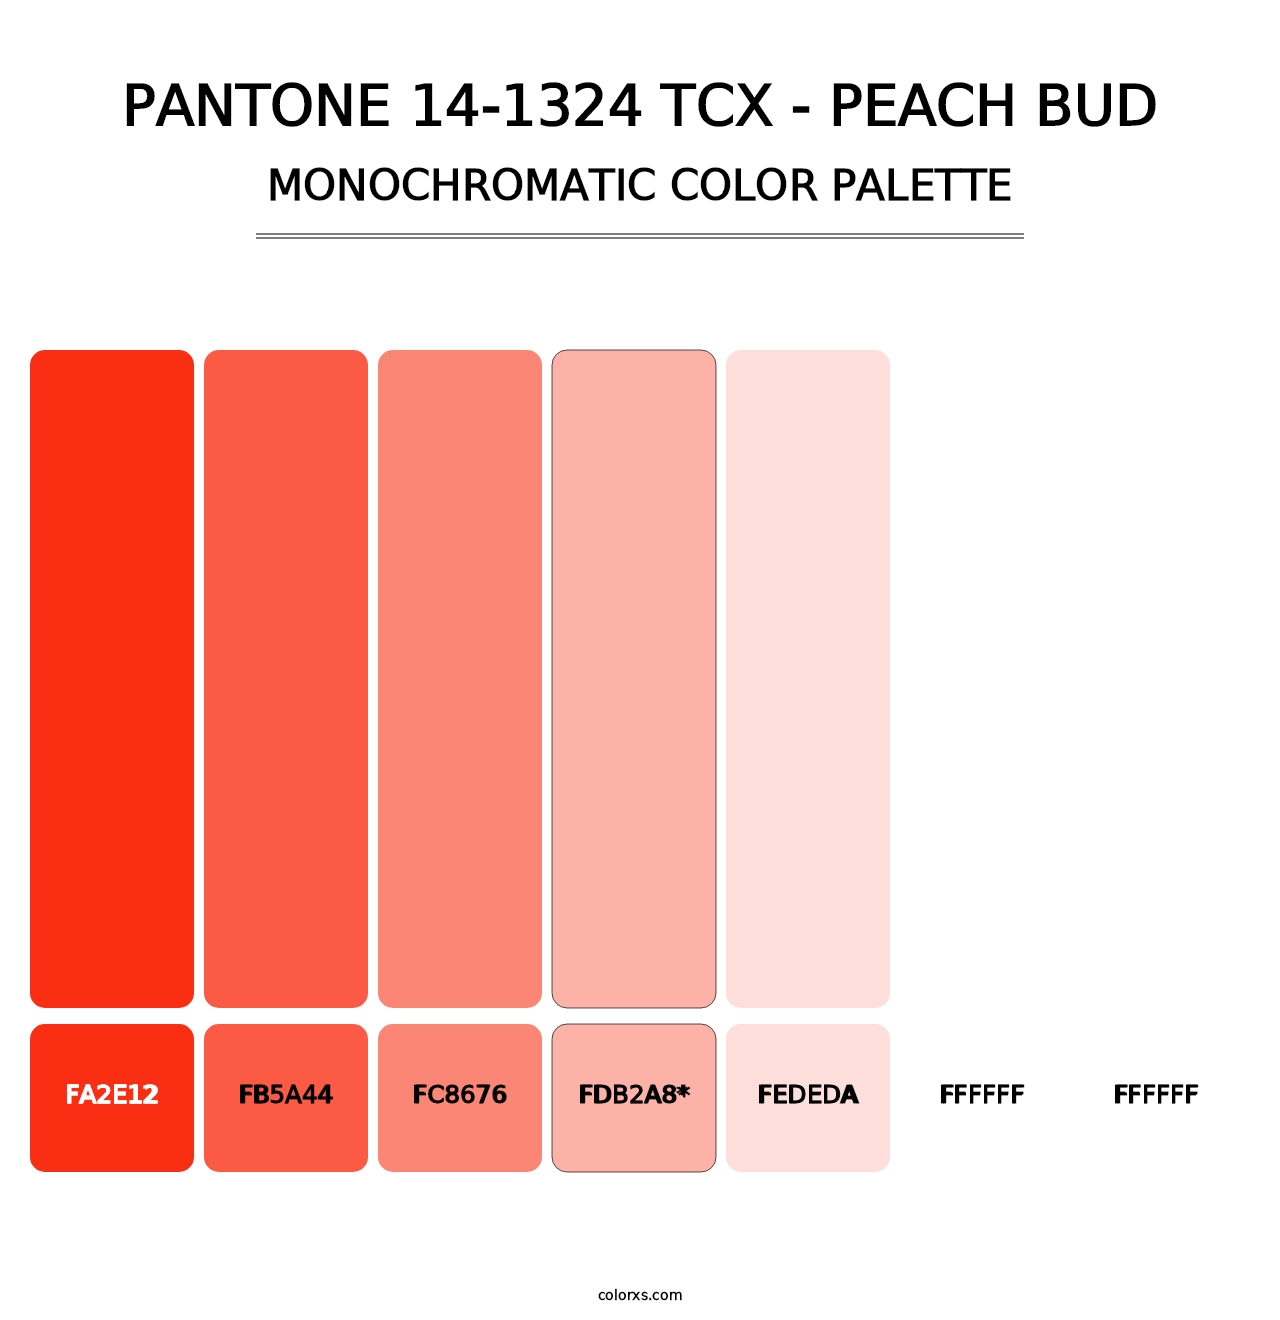 PANTONE 14-1324 TCX - Peach Bud - Monochromatic Color Palette